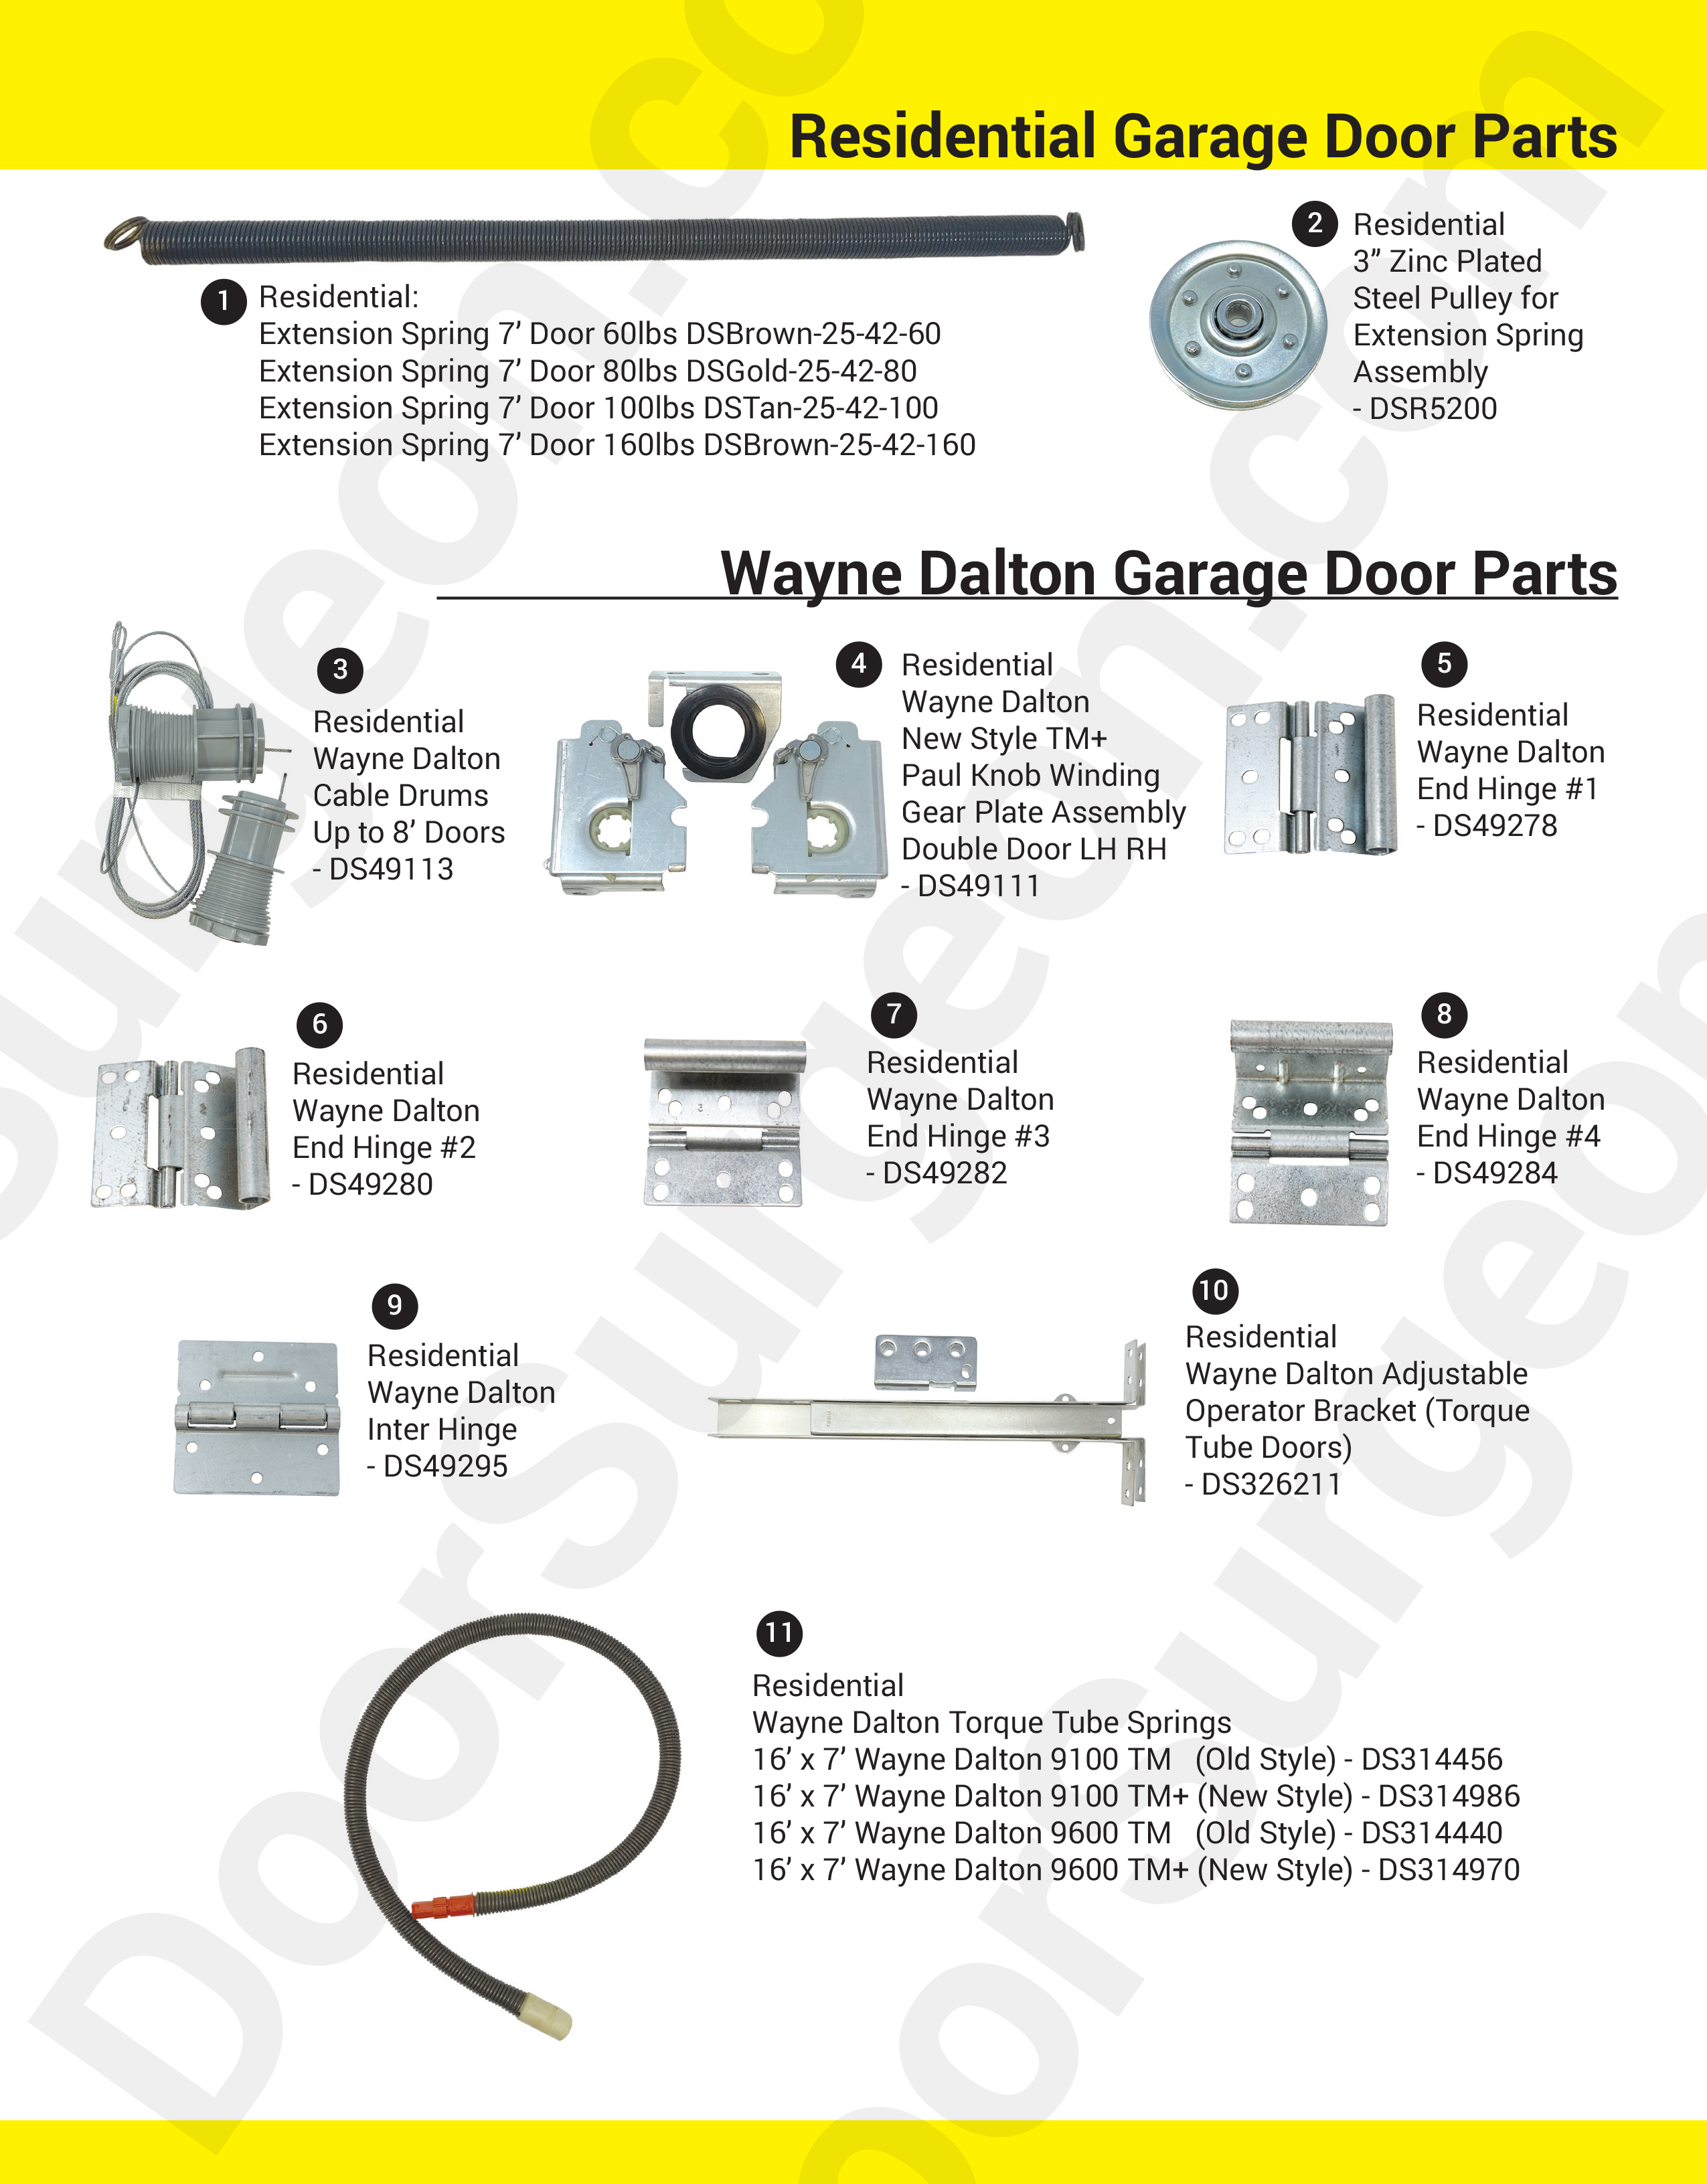 Door Surgeon replacement parts for residential home garage doors.